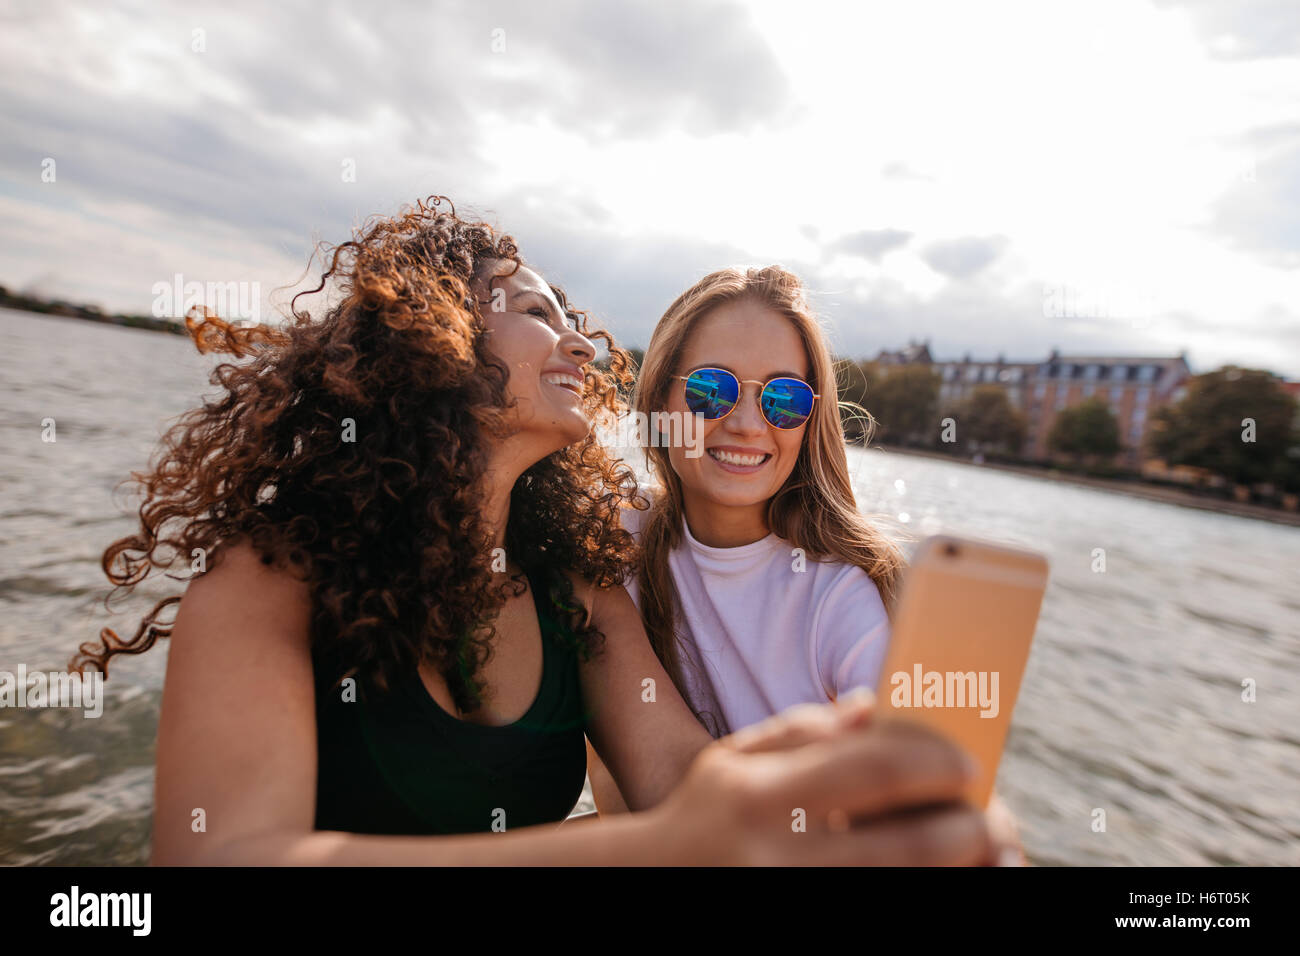 Aufnahme von zwei schönen jungen Frauen, die die Selfie am See. Selbstbildnis mit Smartphone unter Freundinnen. Stockfoto